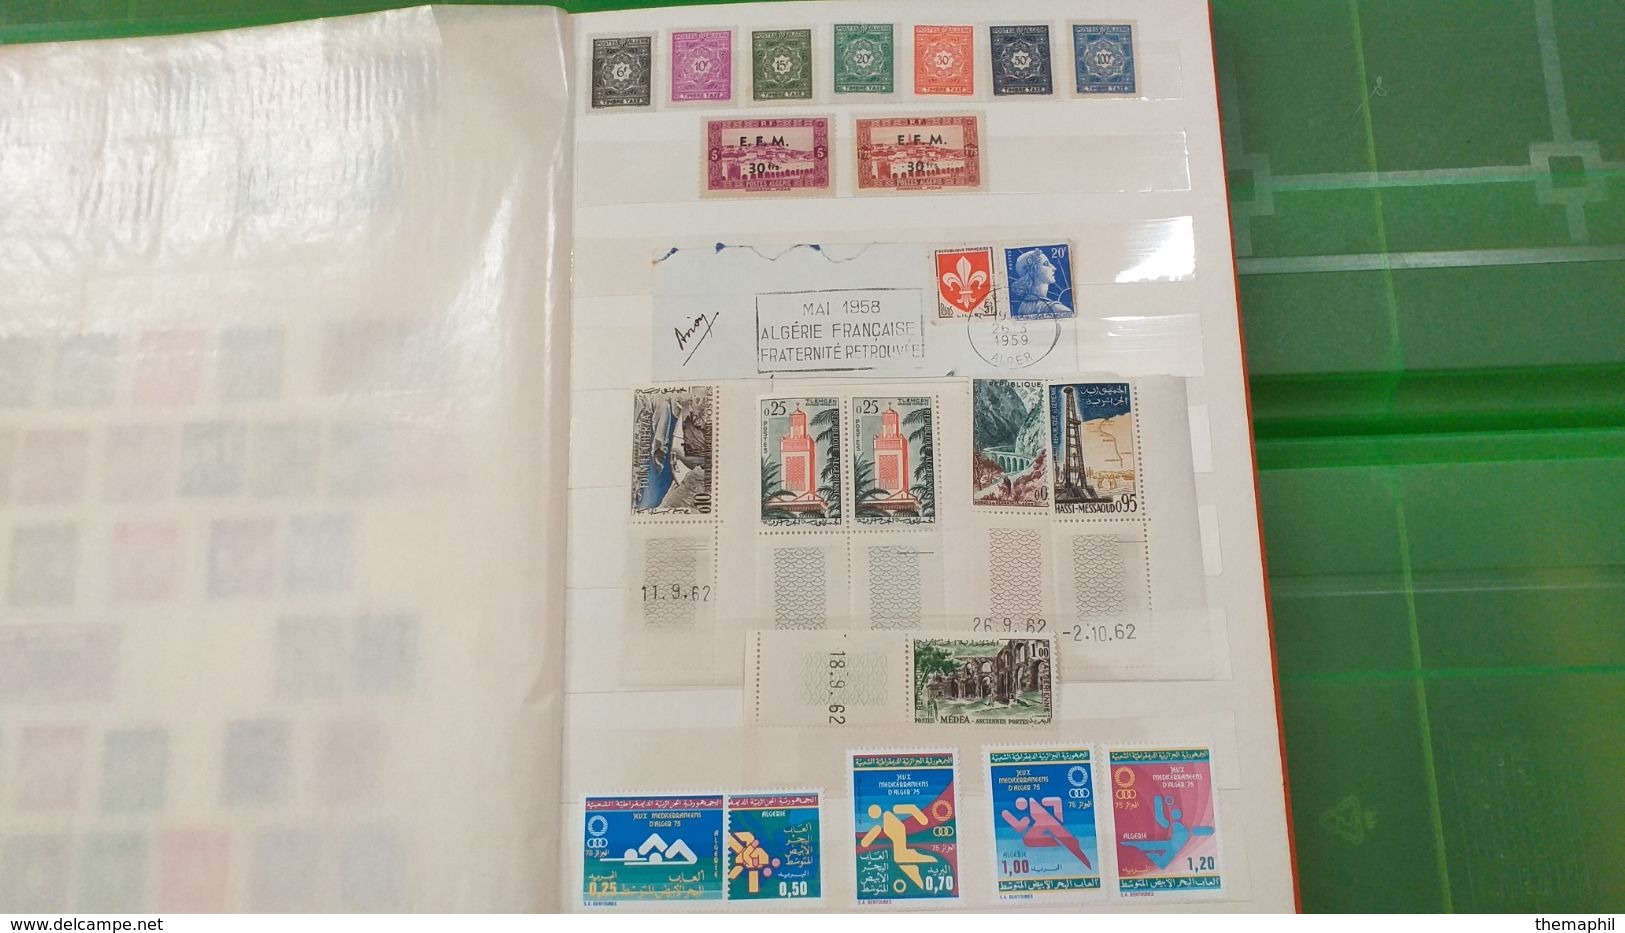 lot n° TH 462  ALGERIE un beau classeur anciens timbres neufs xx ou obl.